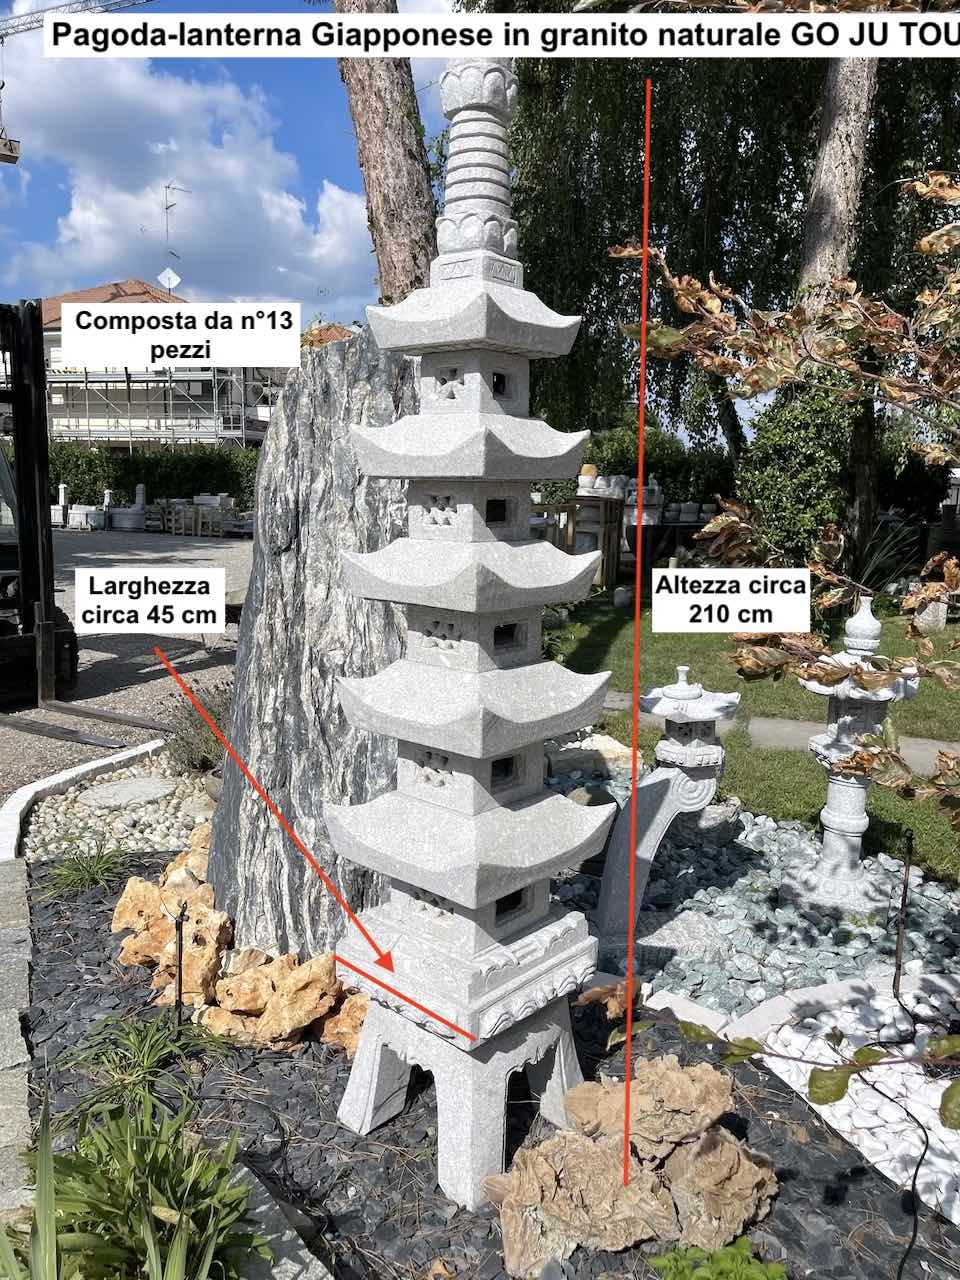 Lanterne japonaise pagode en granit pour jardins pierre go ju tou Kyoto prix pietrarredo italie parabiago